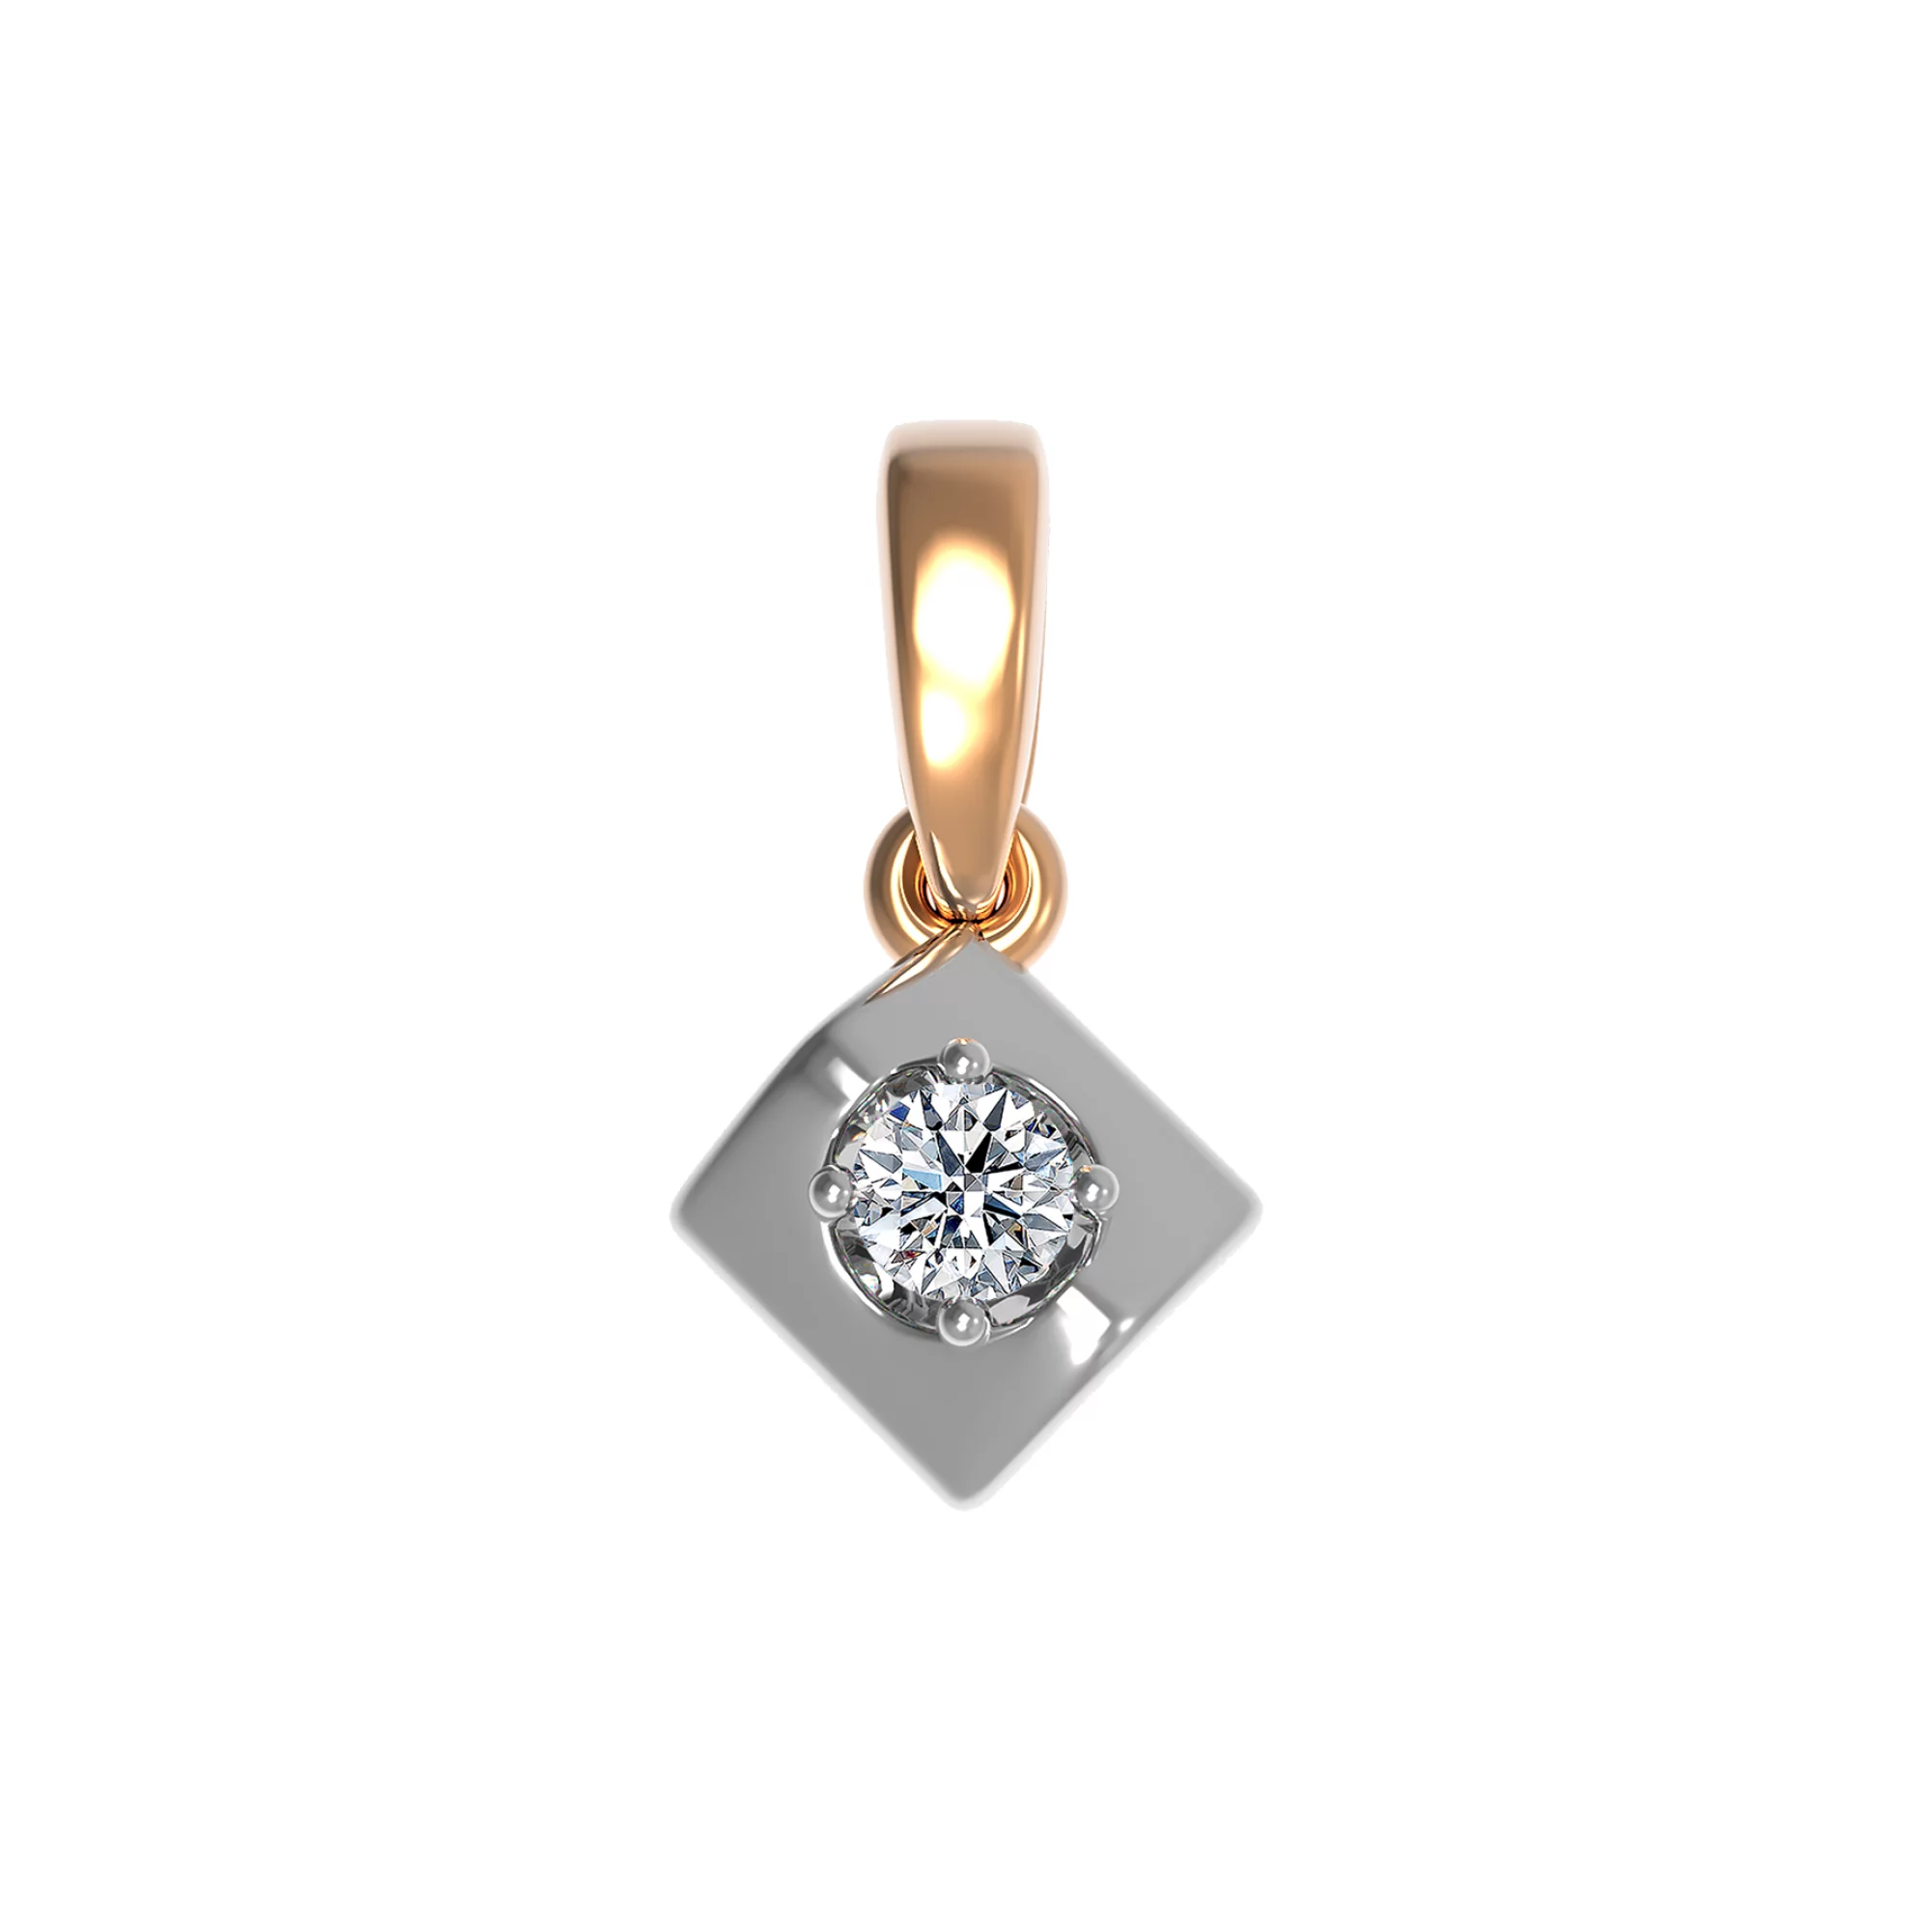 Підвіска золота з діамантами - 904455 – зображення 1